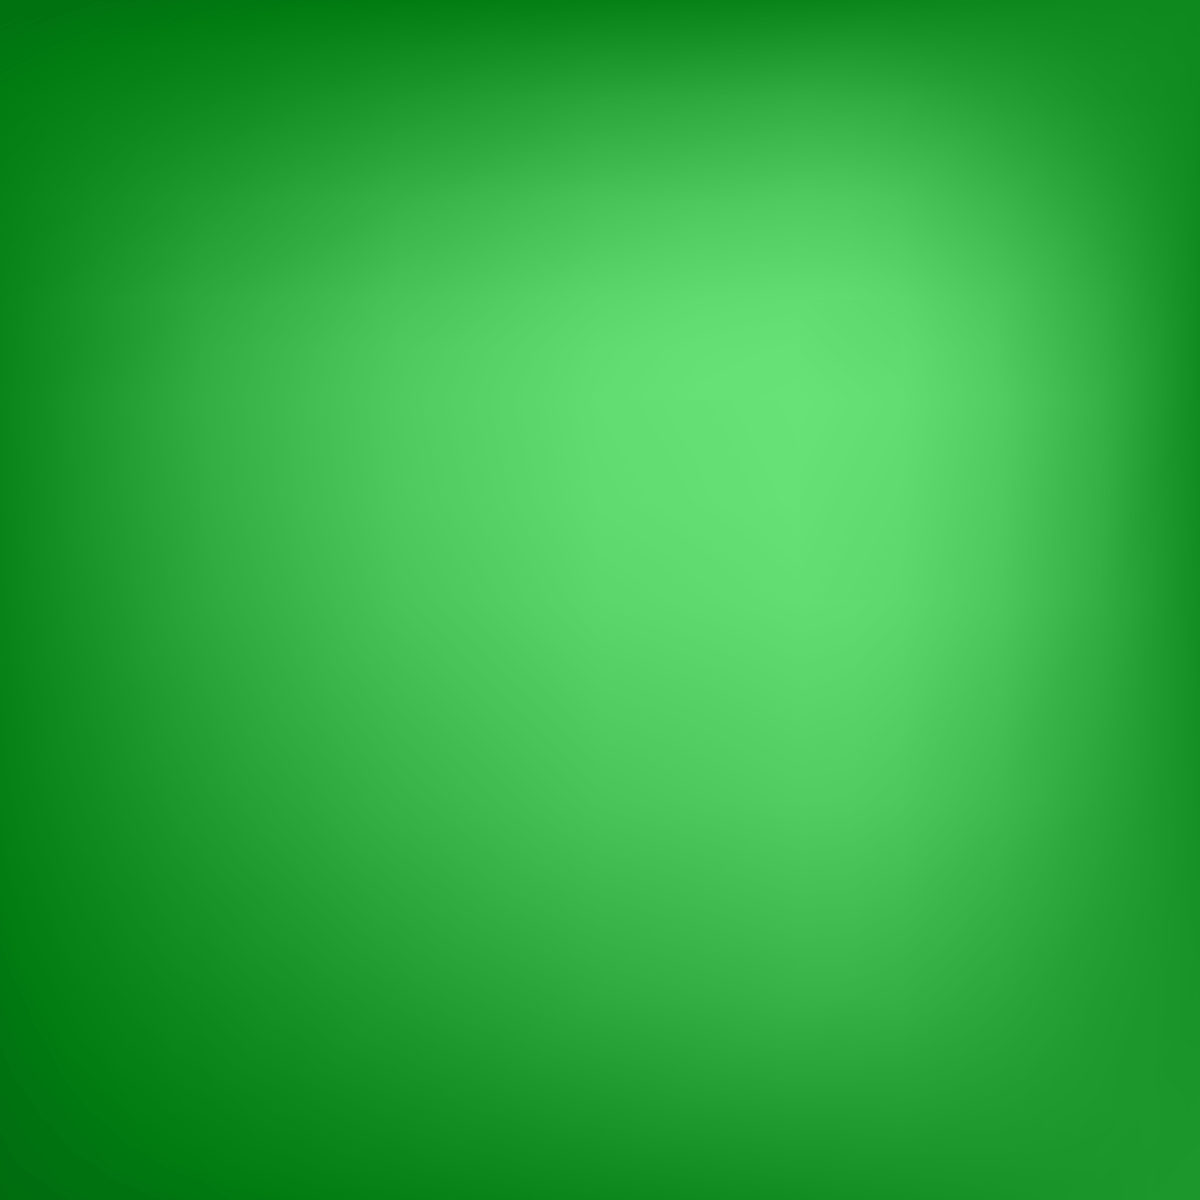 Green Gradient Background. Green Blurred Gradient Background